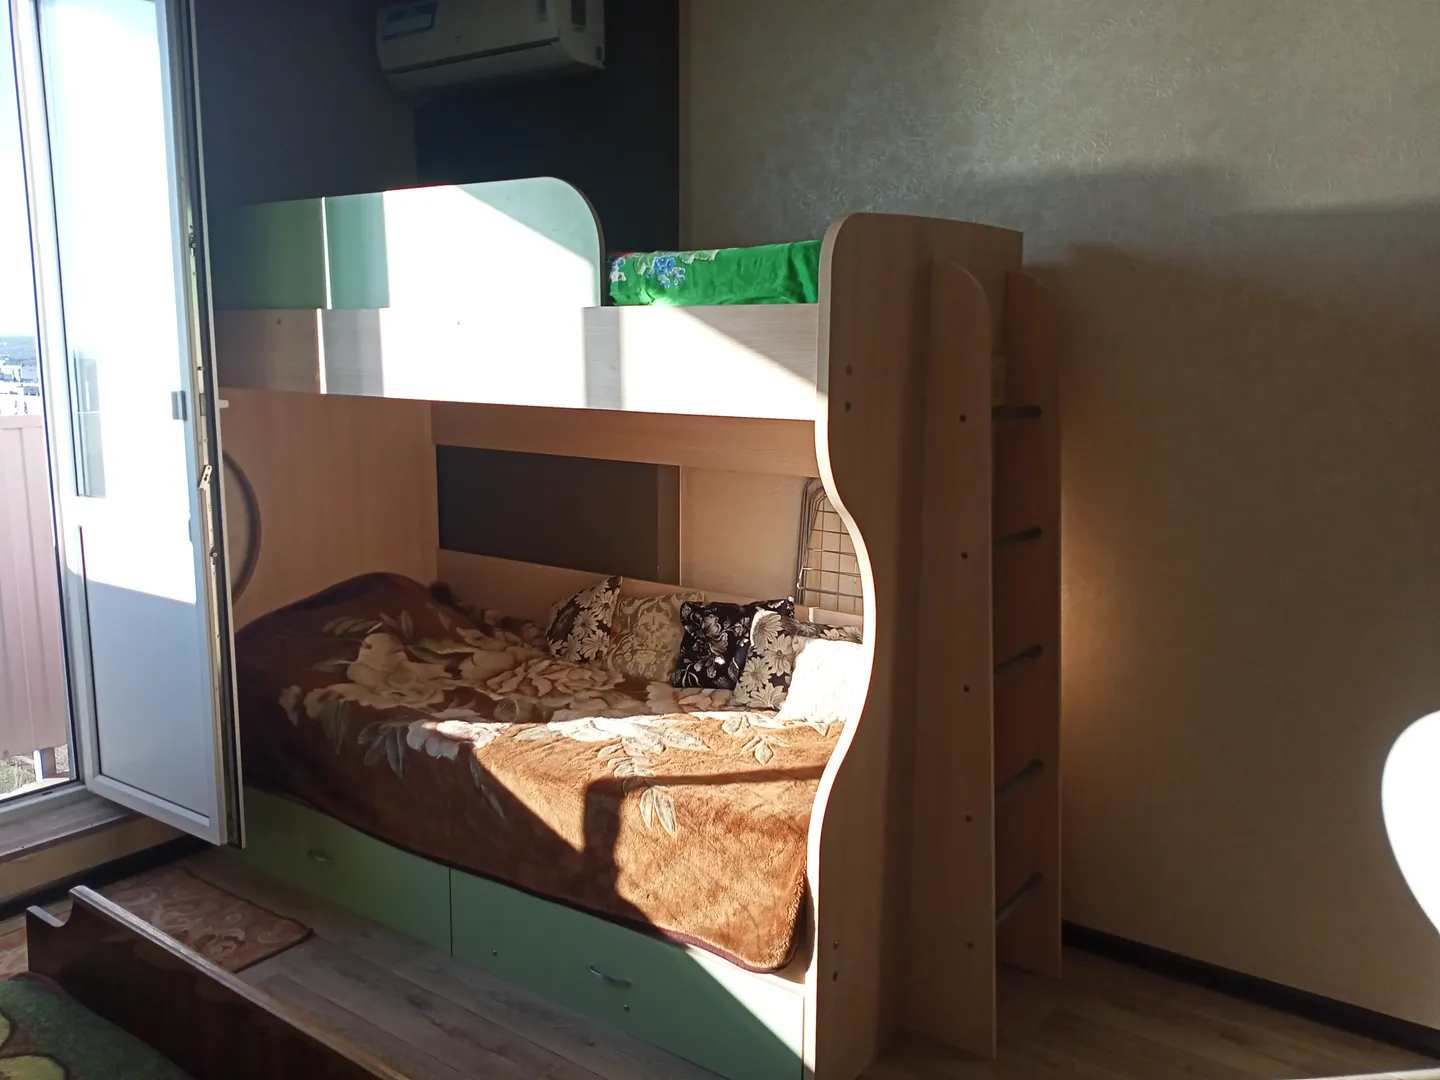 Двухярусная кровать с выдвижным дополнительным спальным местом.